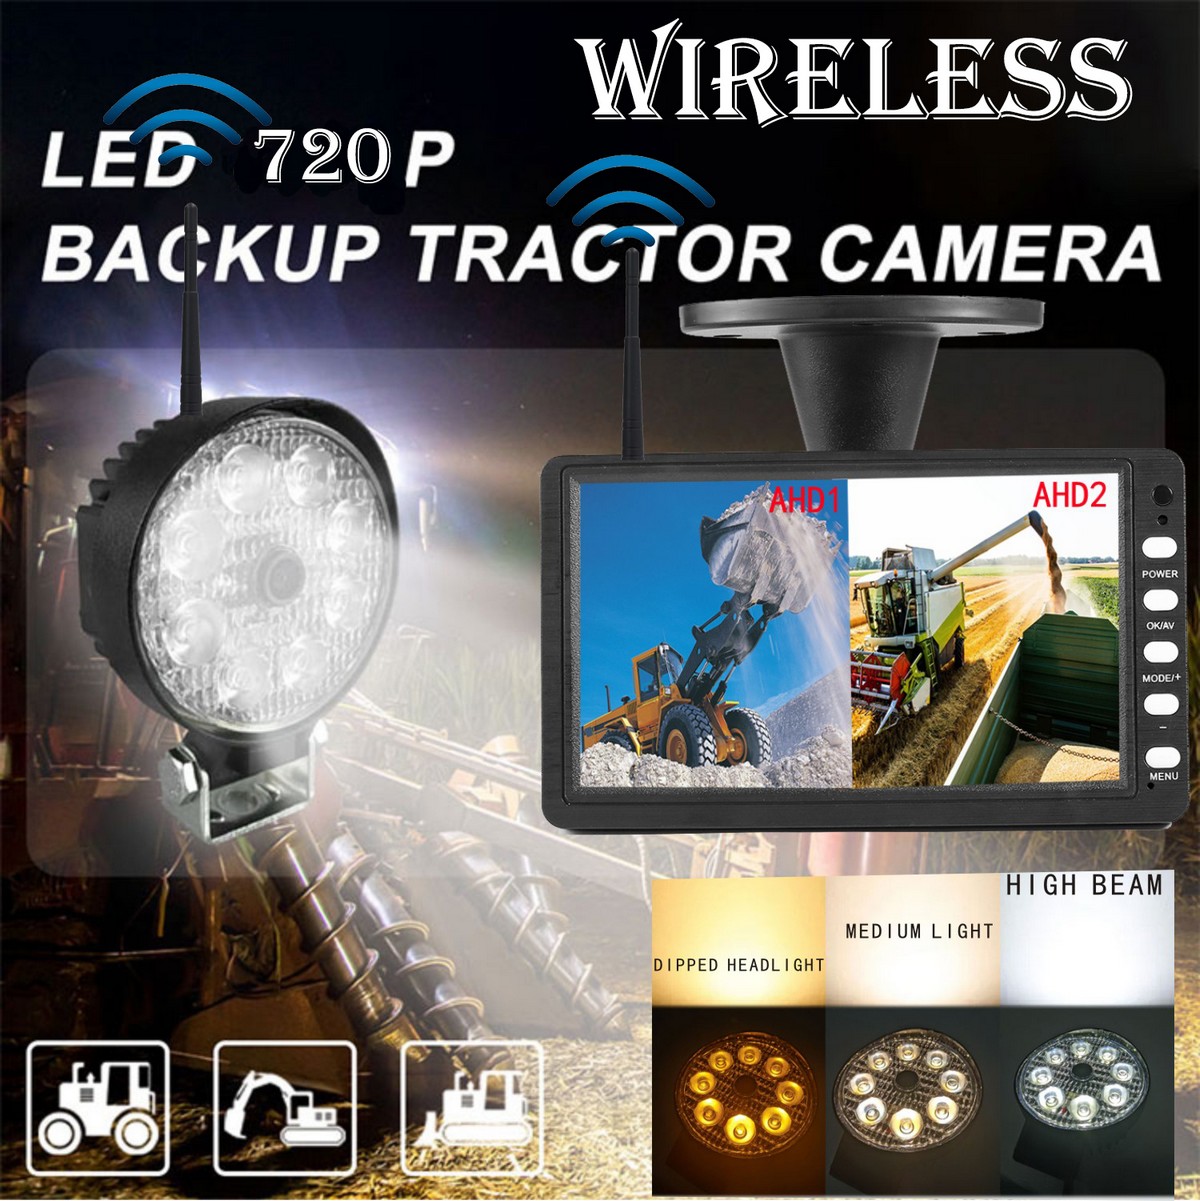 Backup sæt - Wifi kamera med kraftigt hvidt LED lys og mange funktioner